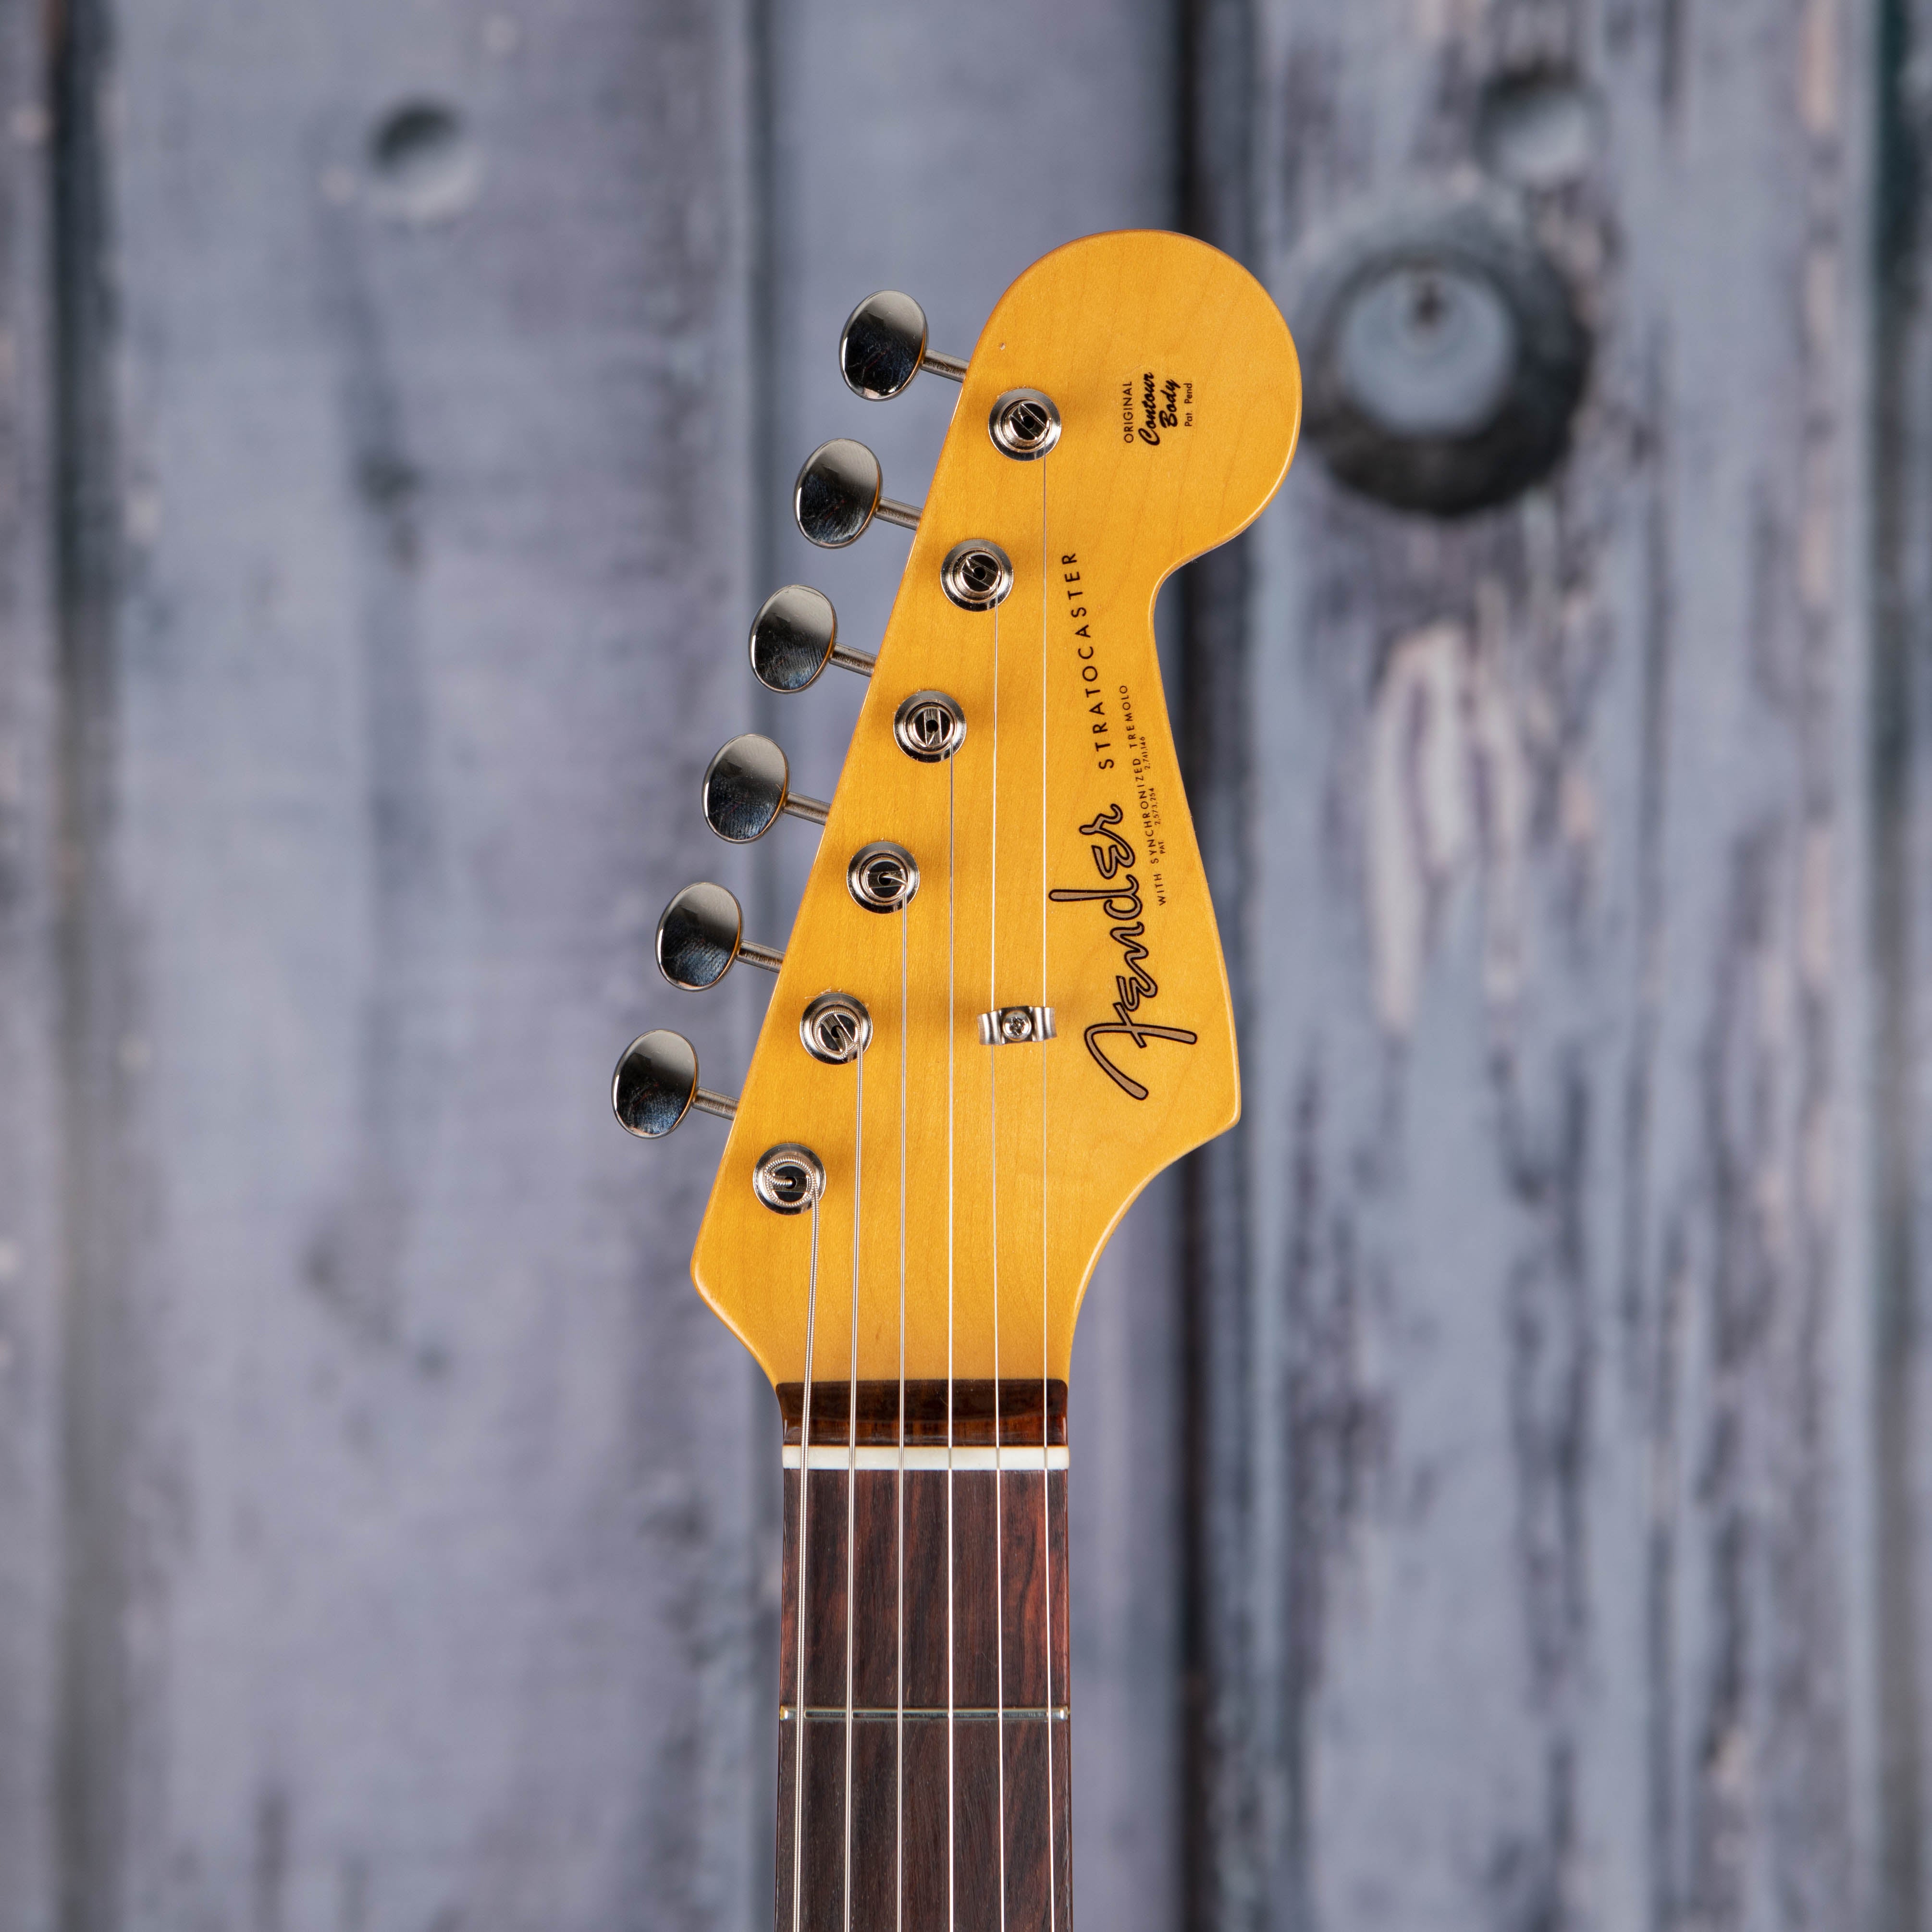 Fender American Vintage II 1961 Stratocaster Electric Guitar, 3-Color Sunburst, front headstock